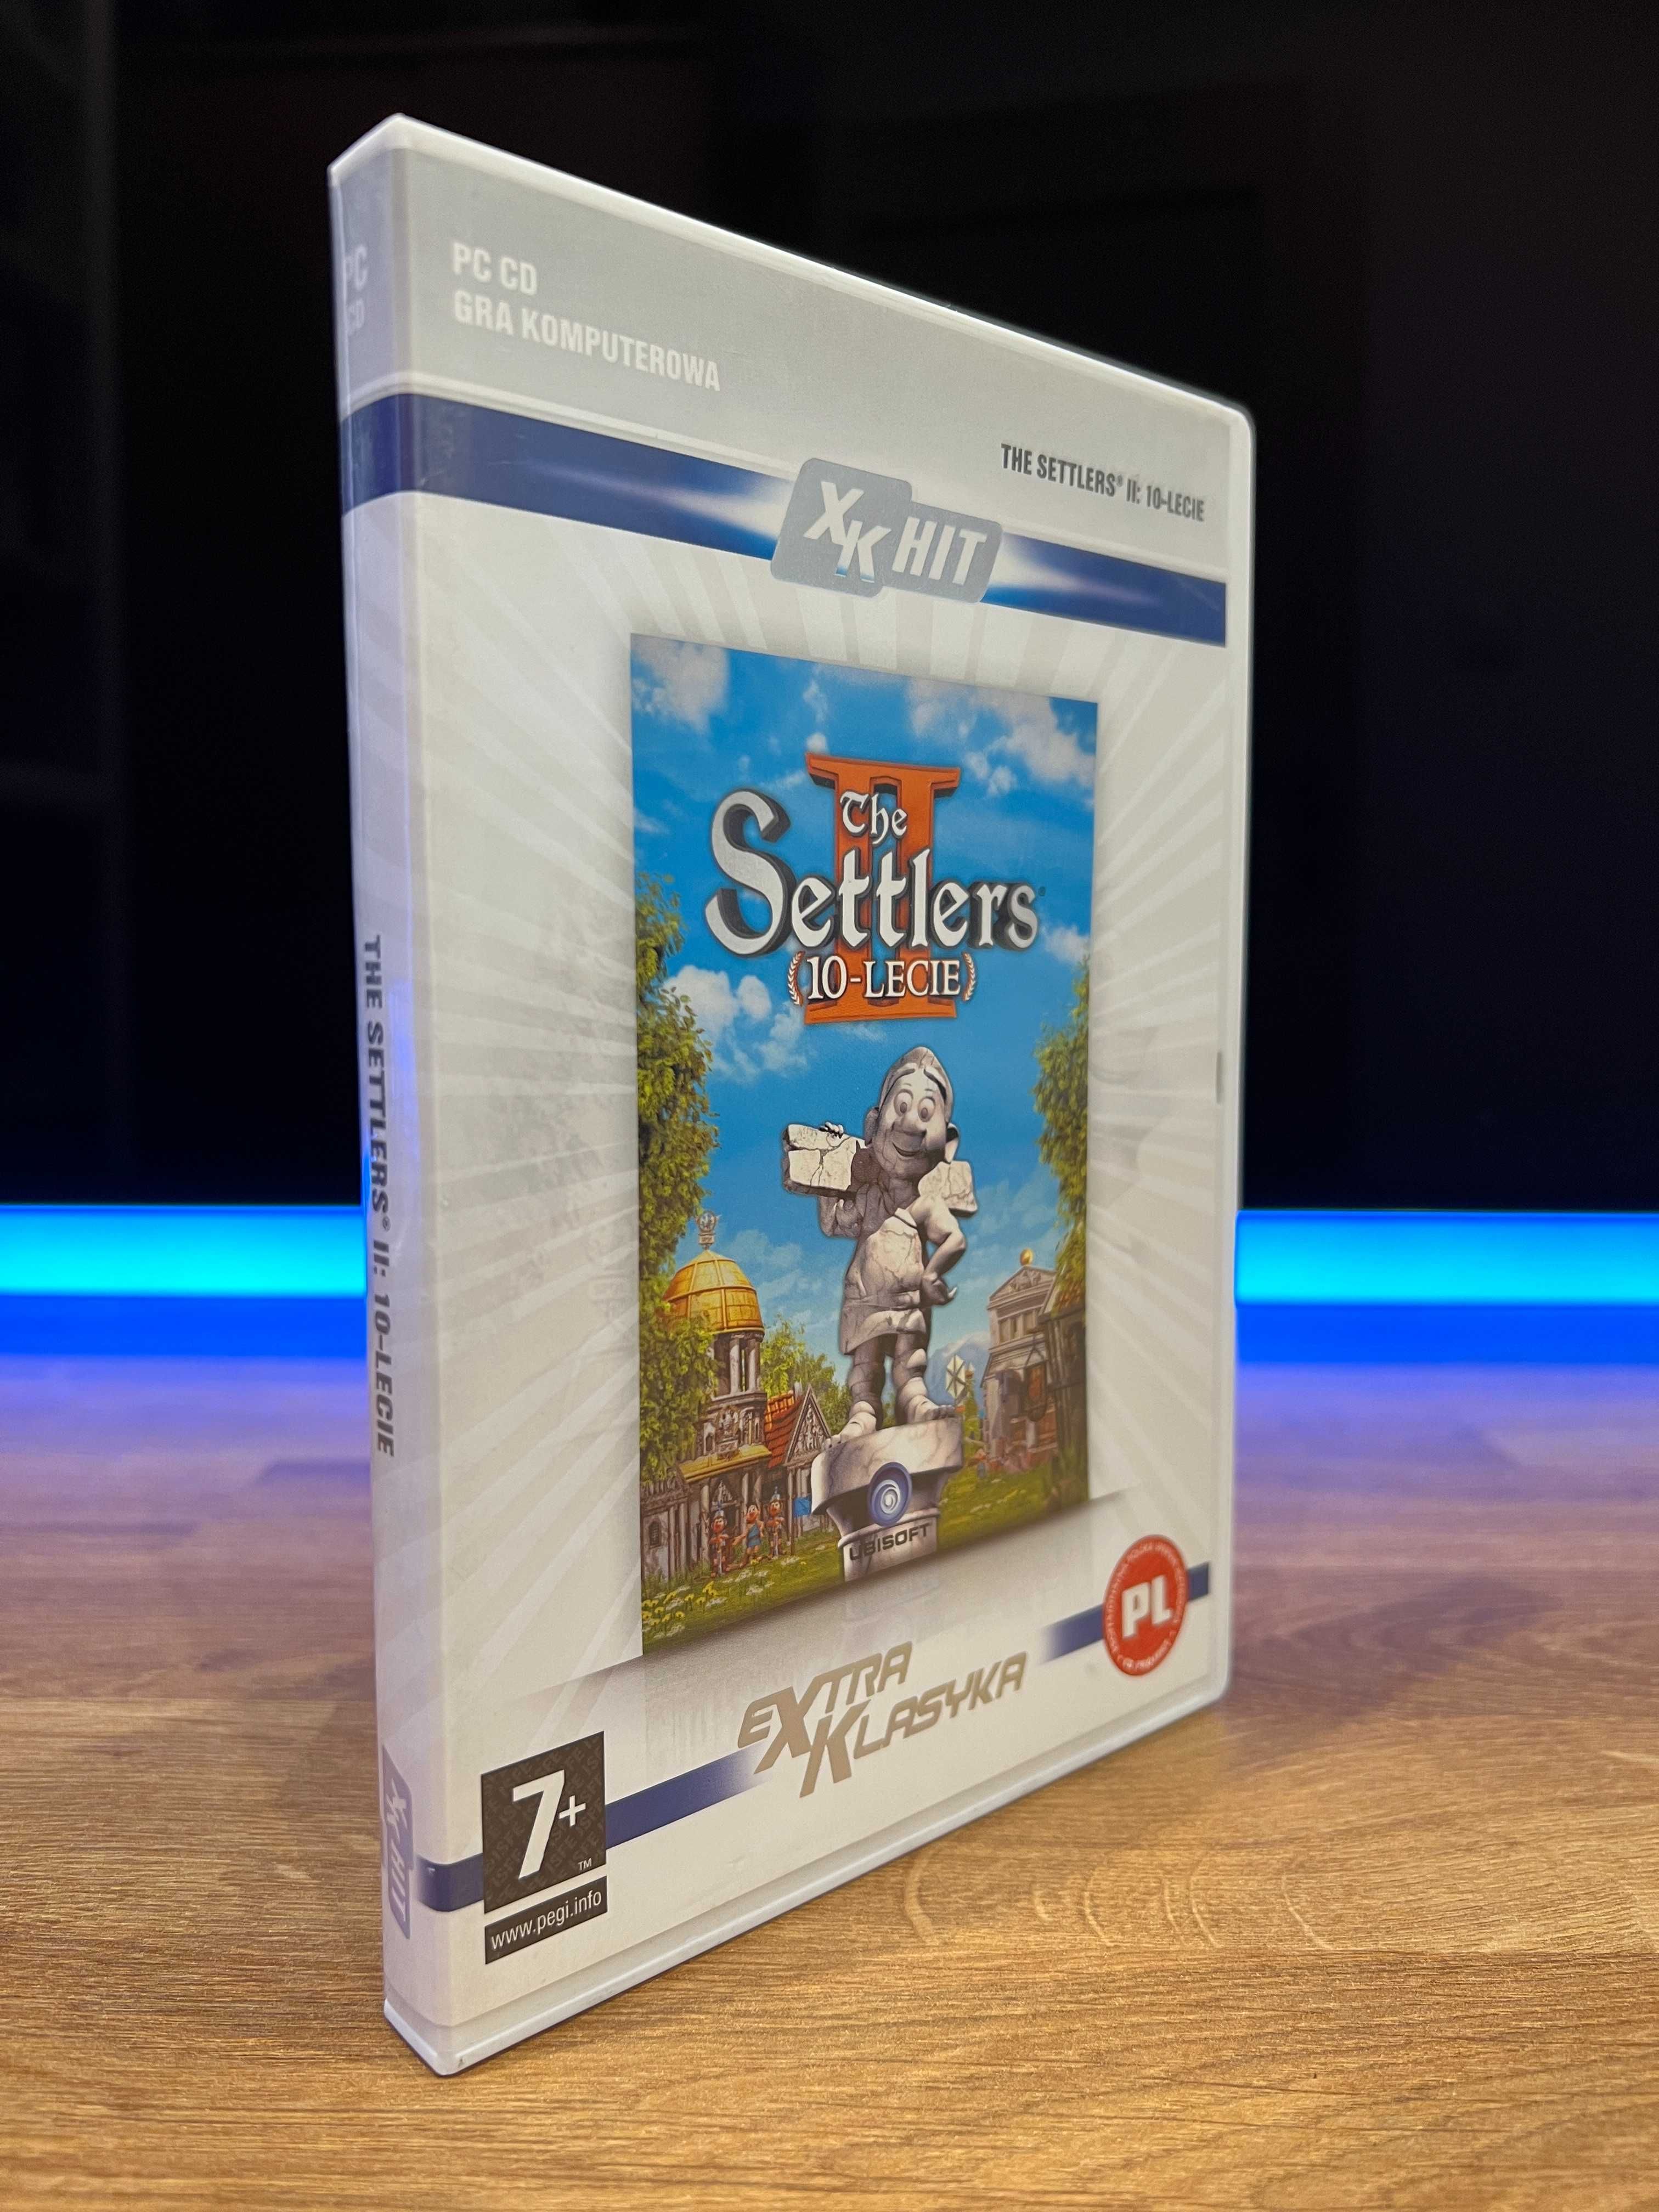 The Settlers II (10-Lecie) (PC PL 2007) CD BOX wydanie eXtra Klasyka